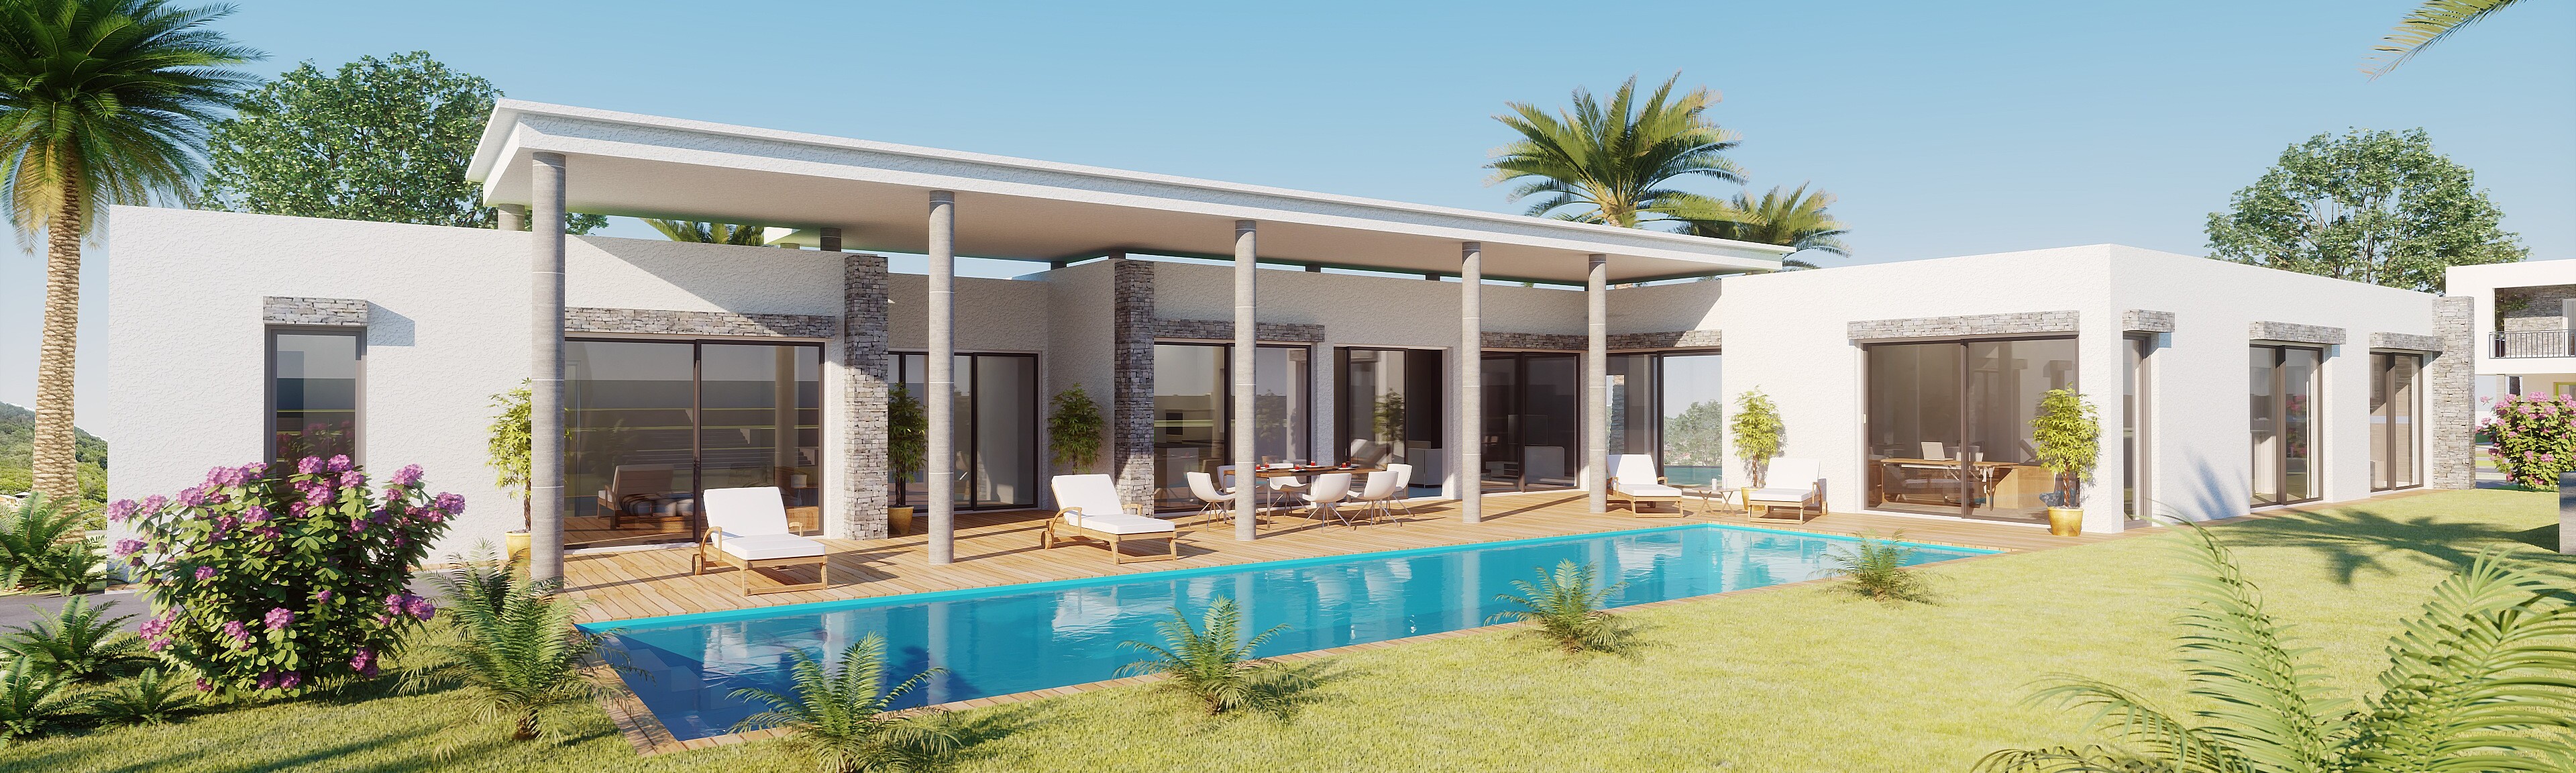 perspective 3d villa de luxe PACA - infographiste 3d architecture freelance Rhône-Alpes - films 3D immobilier